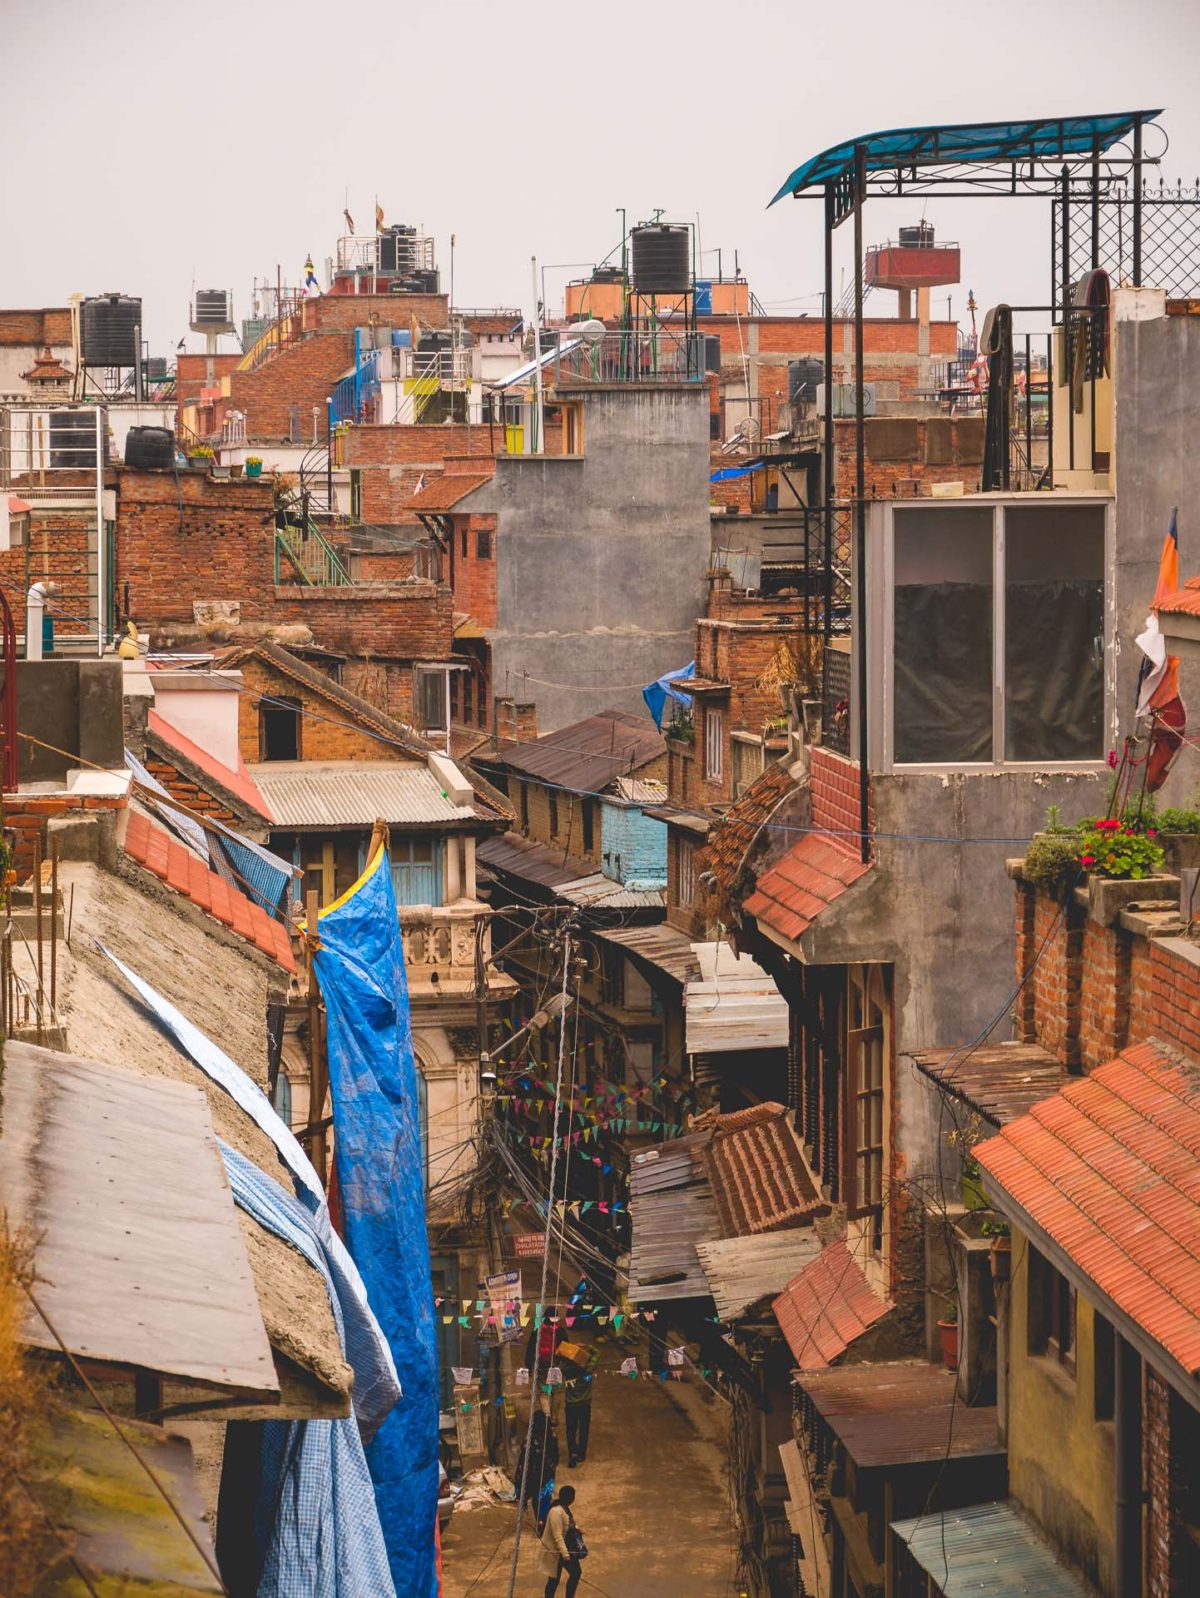 View of street in Kathmandu Nepal